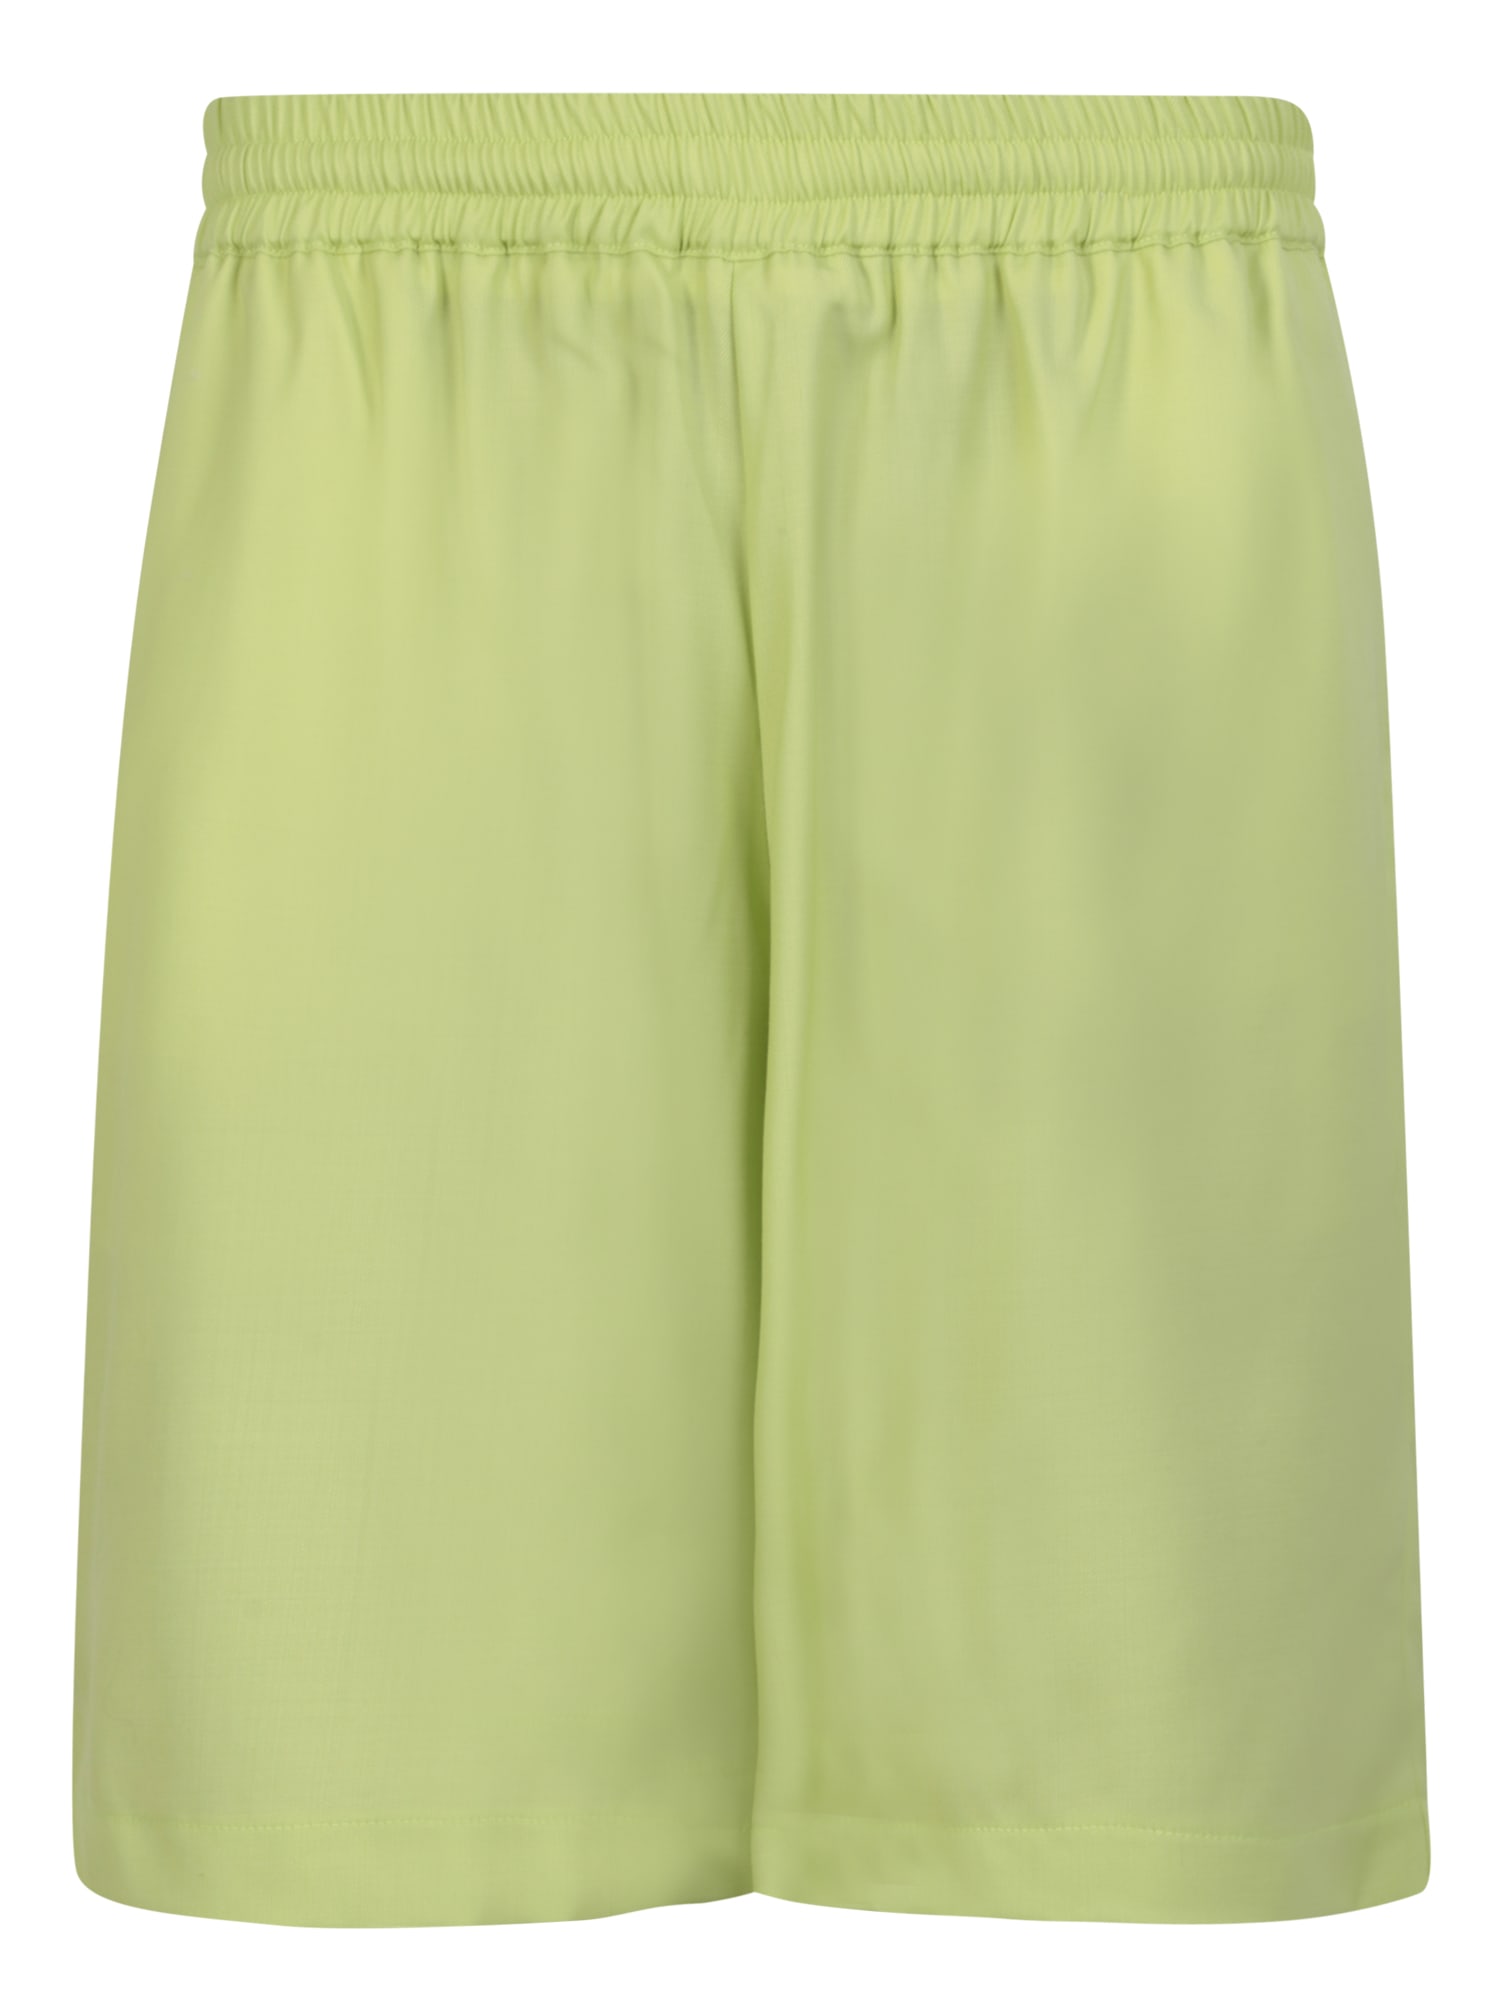 Shop Bonsai Lime Green Shorts